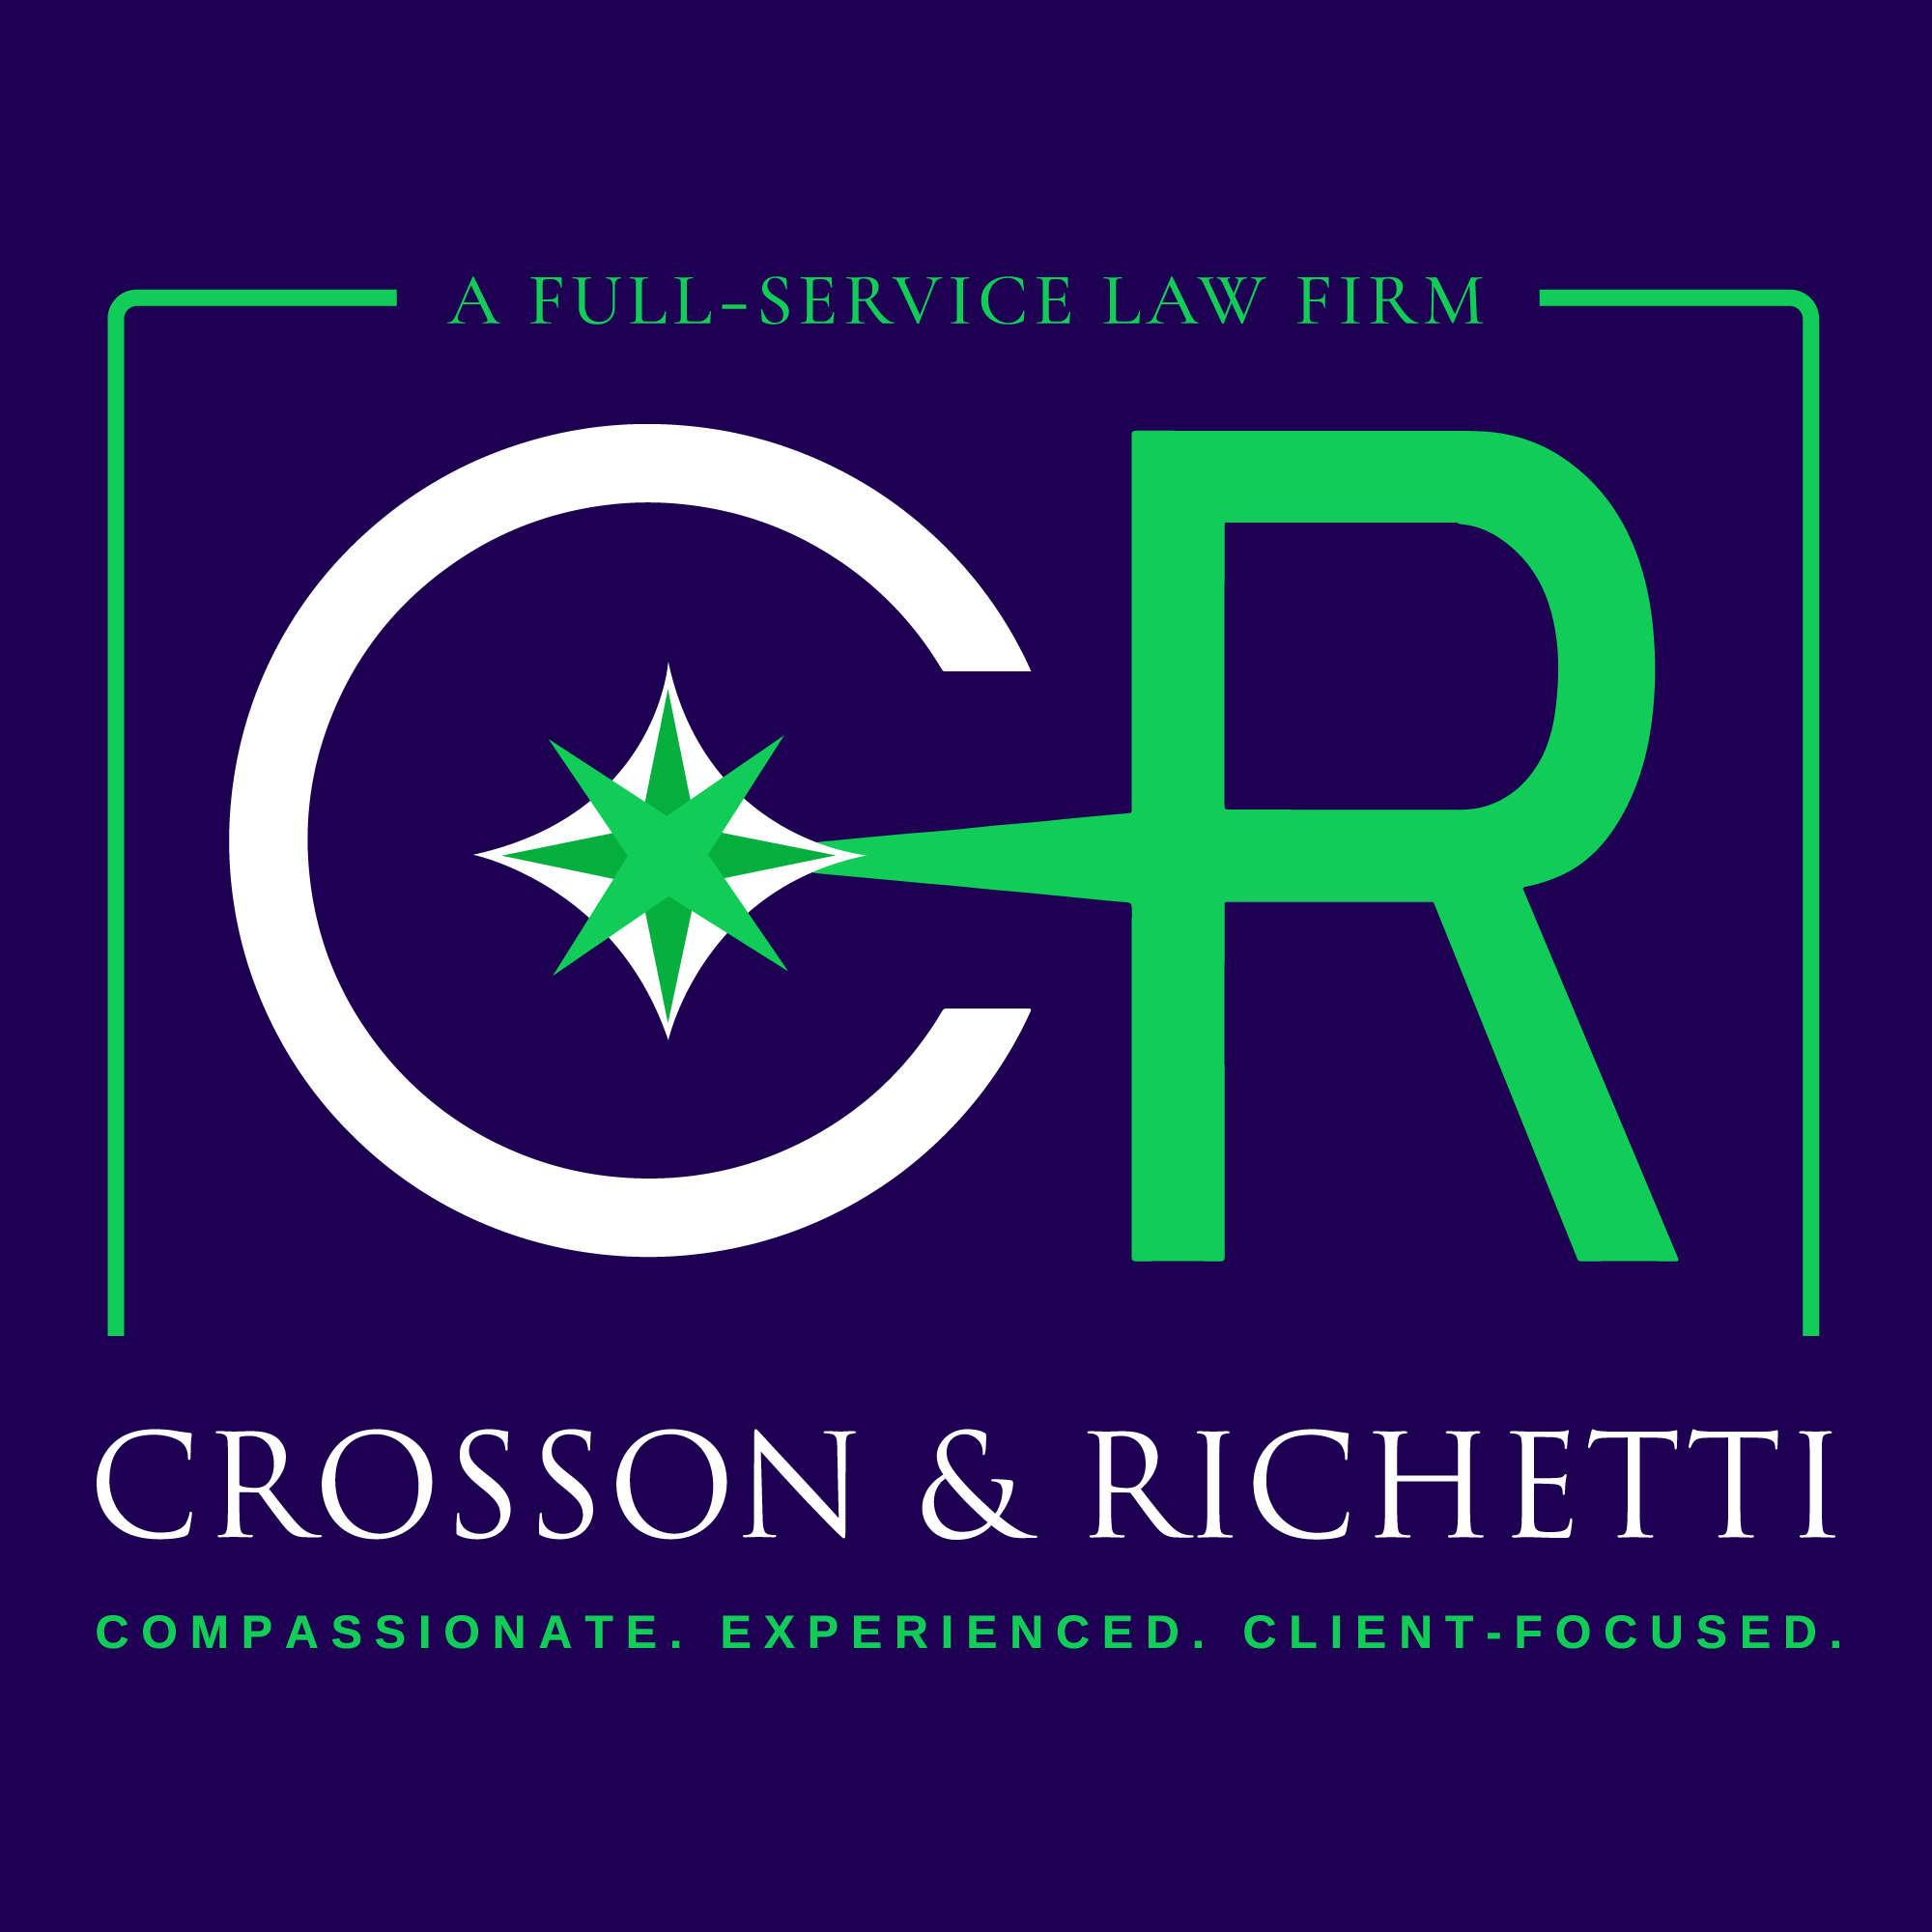 Crosson & Richetti Full-Service Law Firm